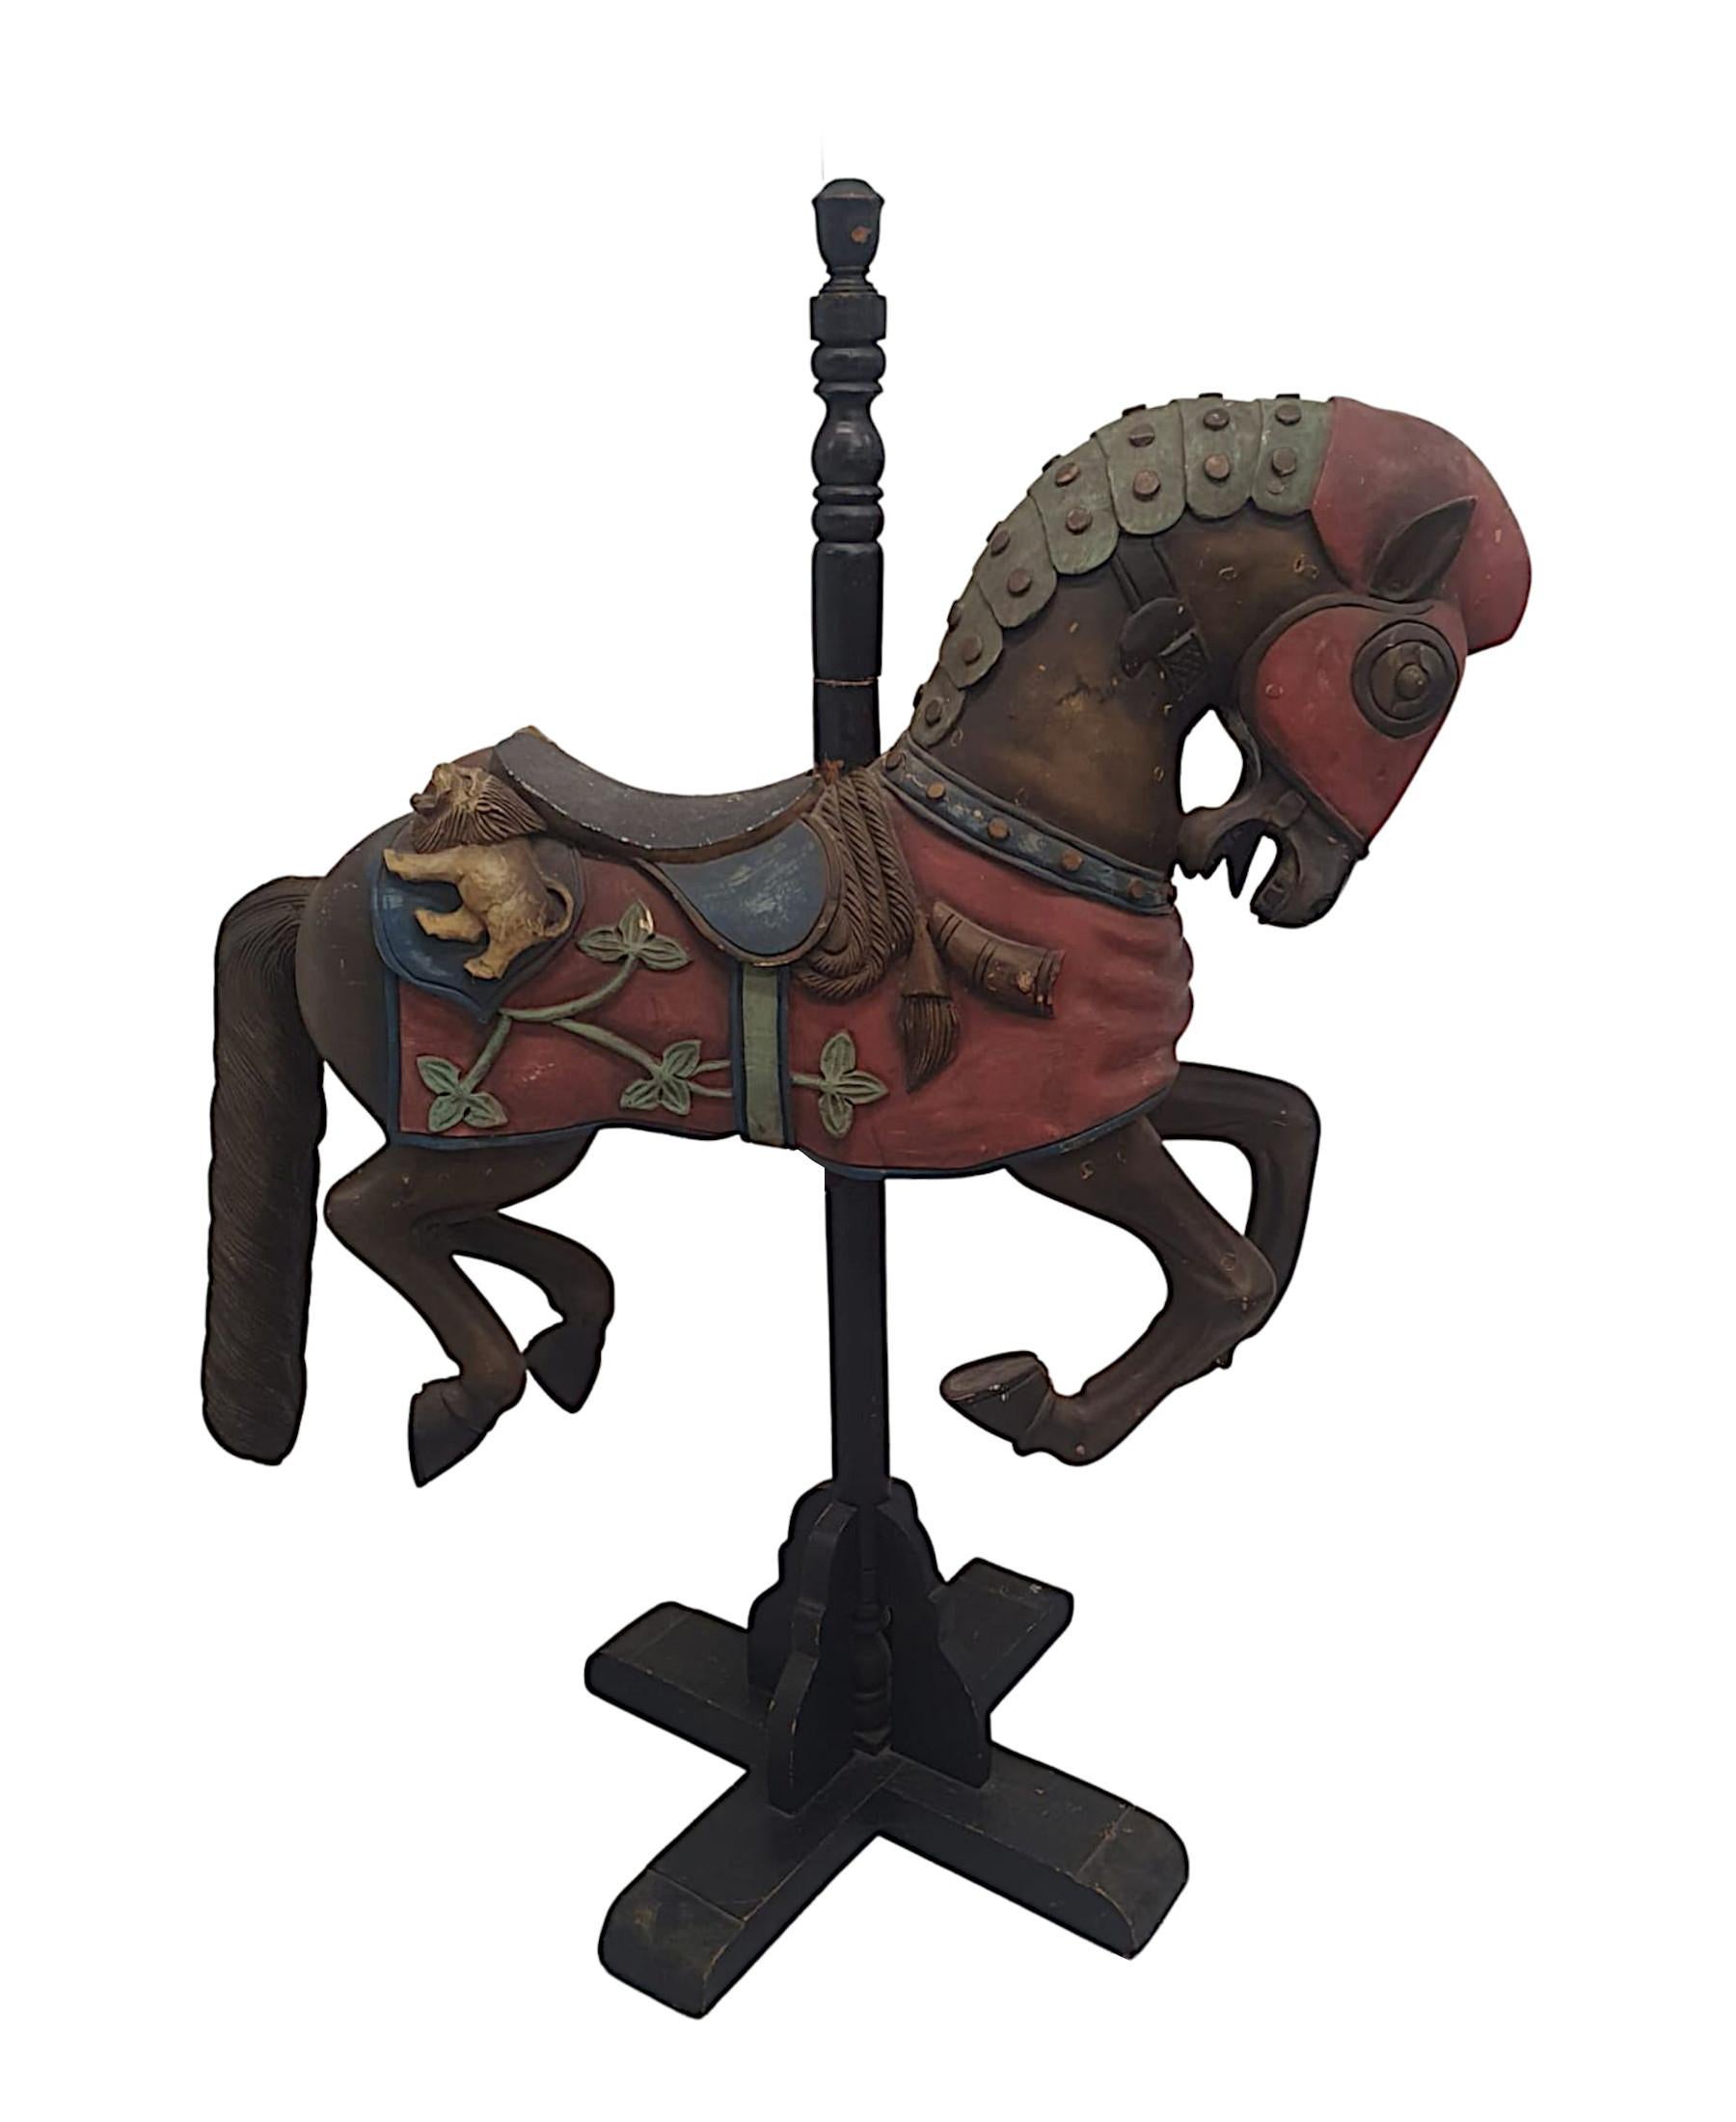 Très rare cheval de carrousel en bois du début du 20e siècle monté sur un support en bois, finement sculpté à la main et orné d'une robe armoriée rouge, bleue et or avec des détails de lion, de feuillage et de cor de chasse étonnamment sculptés.  